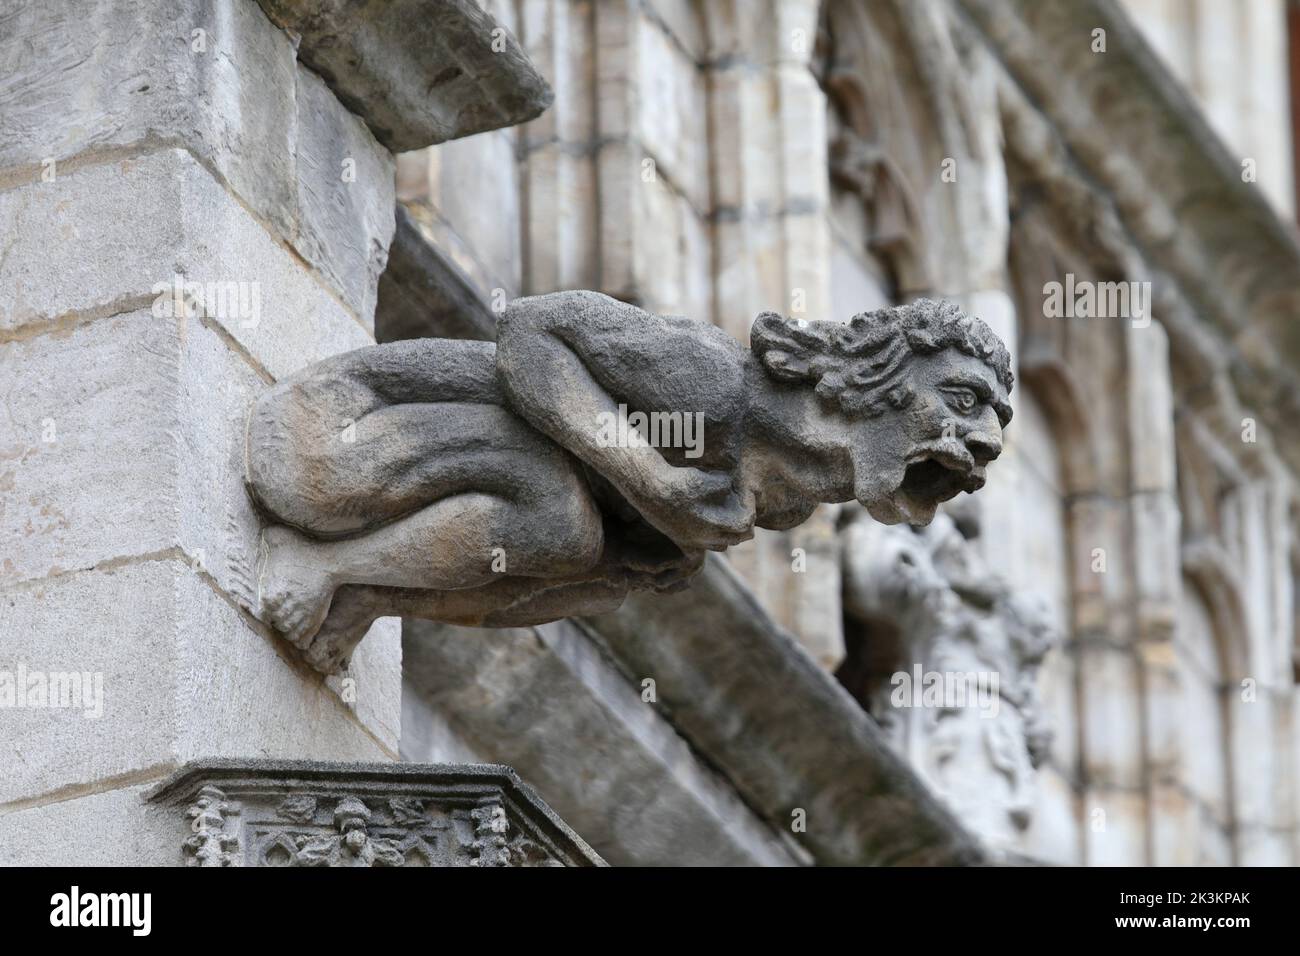 Estatua monstruosa con características casi humanas llamada gárgola en la fachada del edificio histórico Foto de stock